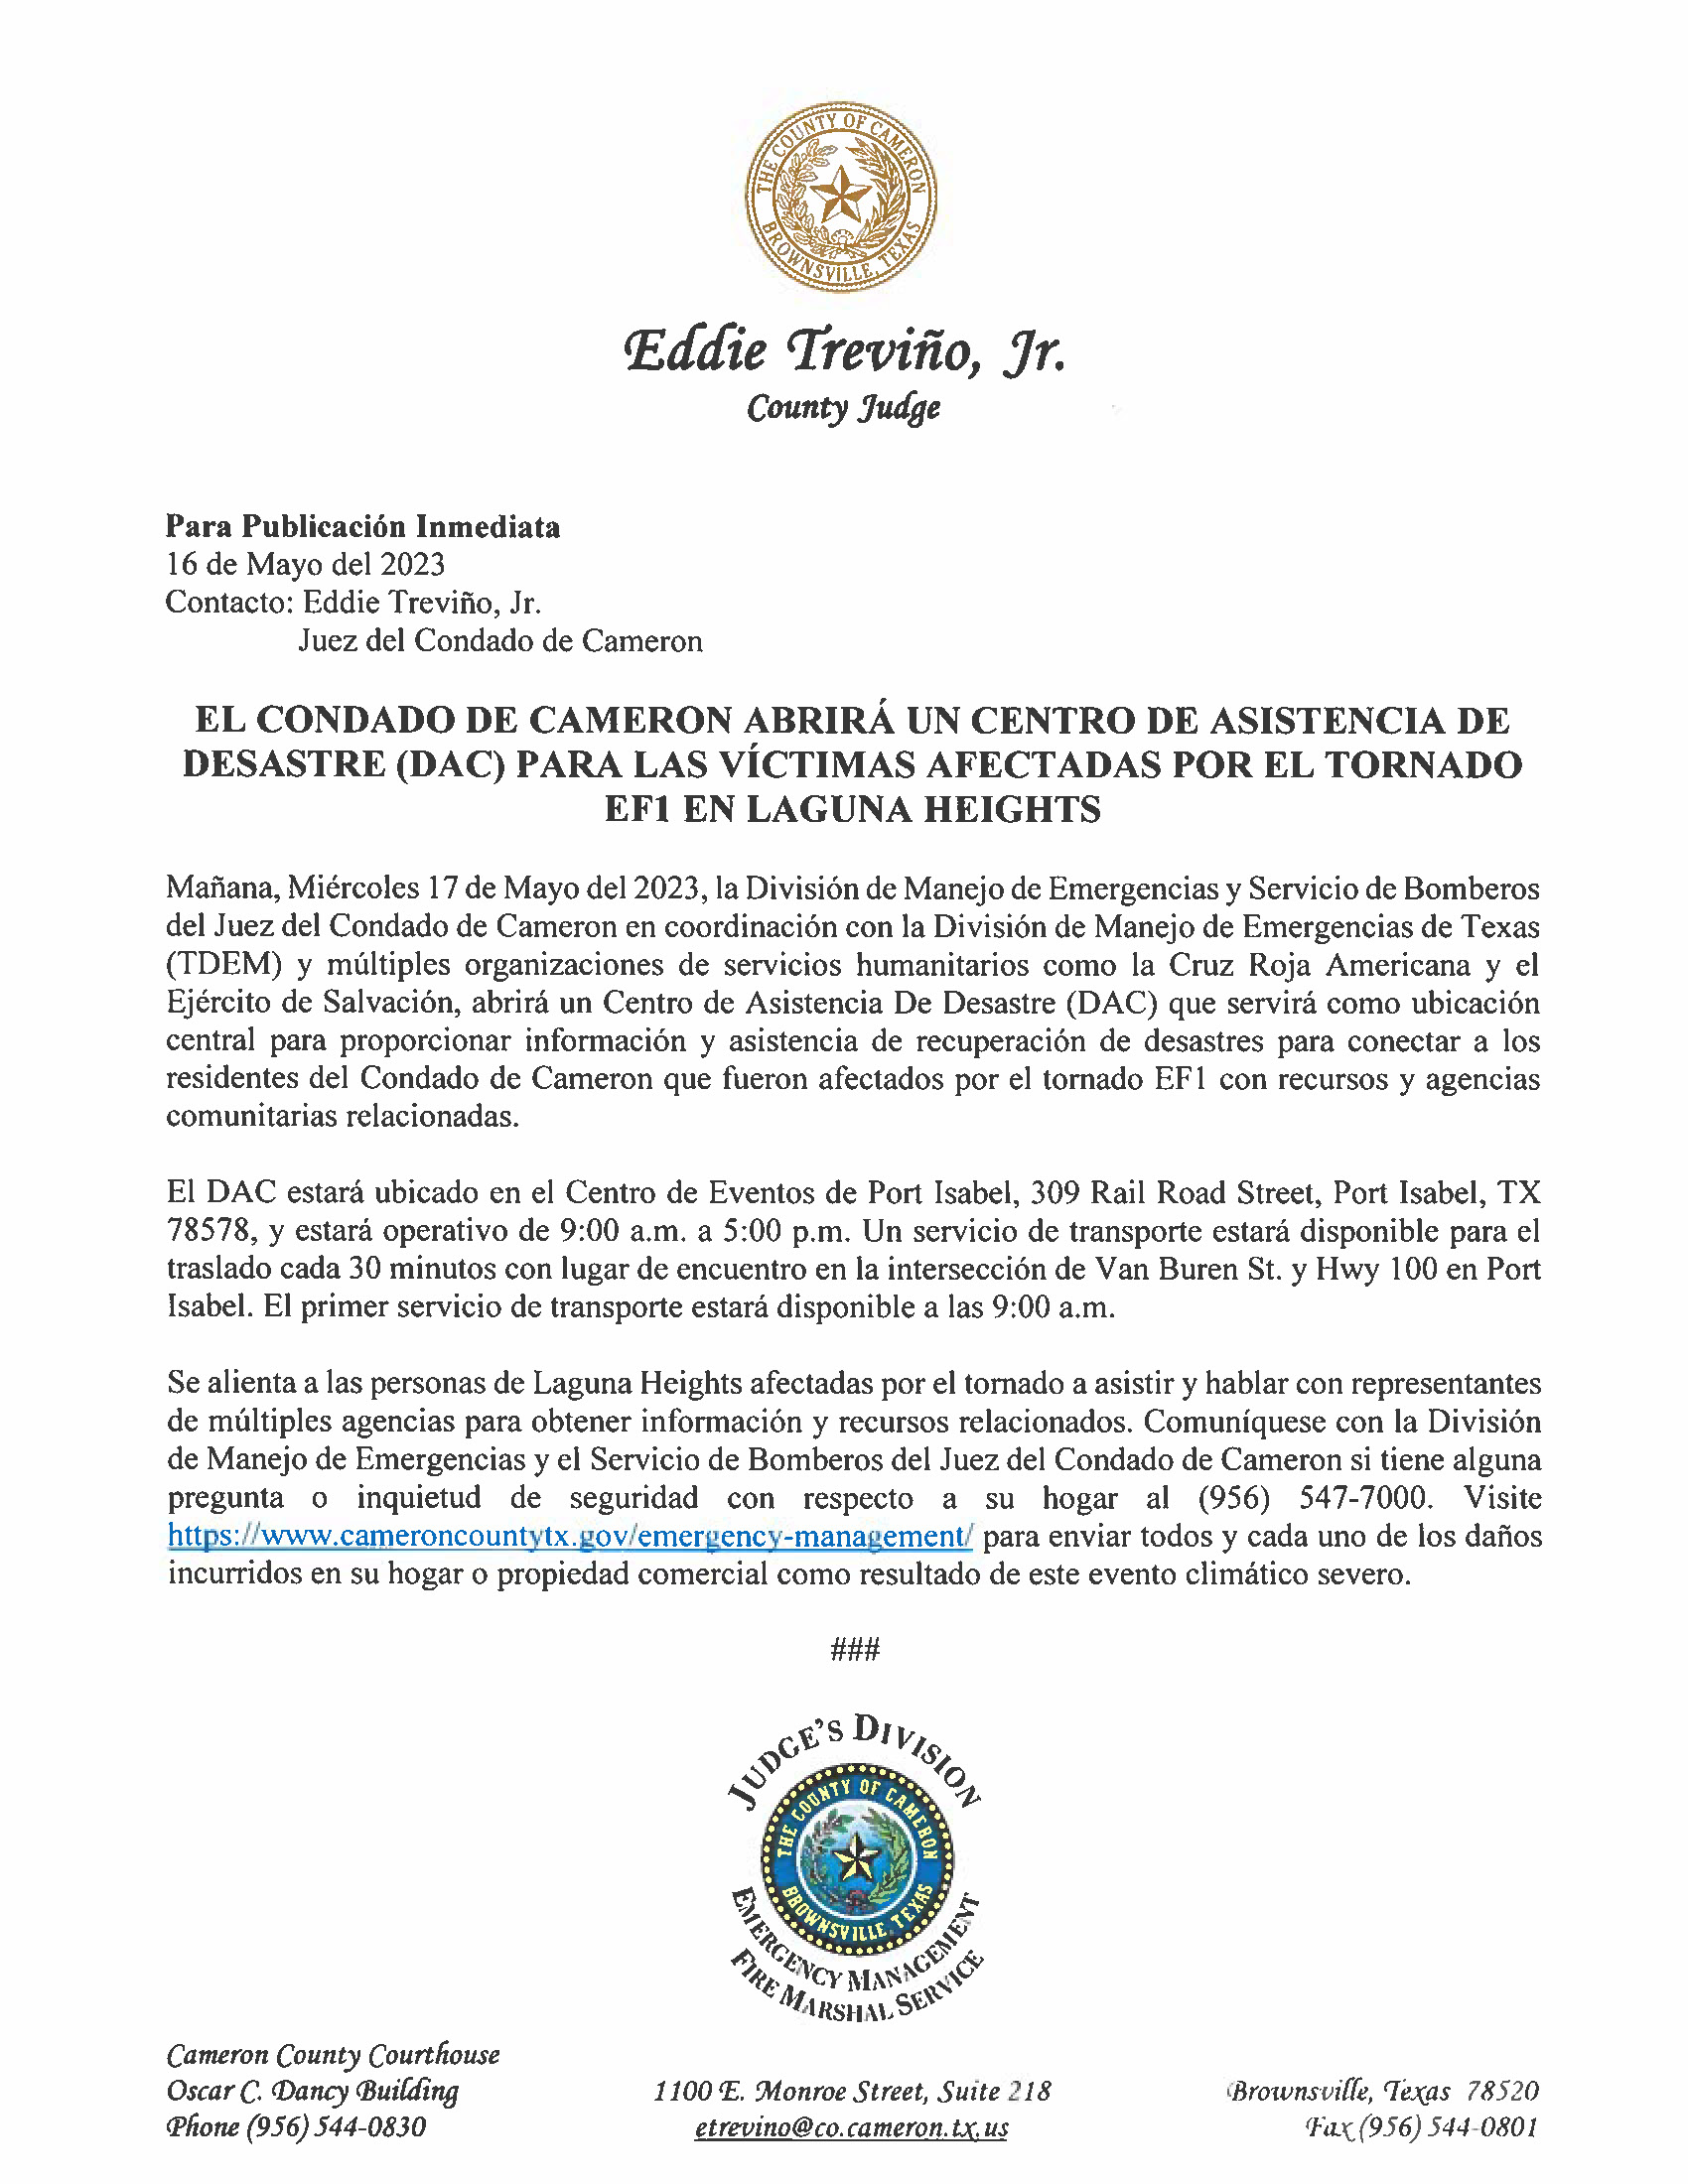 El Condado De Cameron Abrira Un Centro De Asistencia De Desastre DAC Para Las Victimas Afectadas Por El Tornado EF1 En Laguna Heights